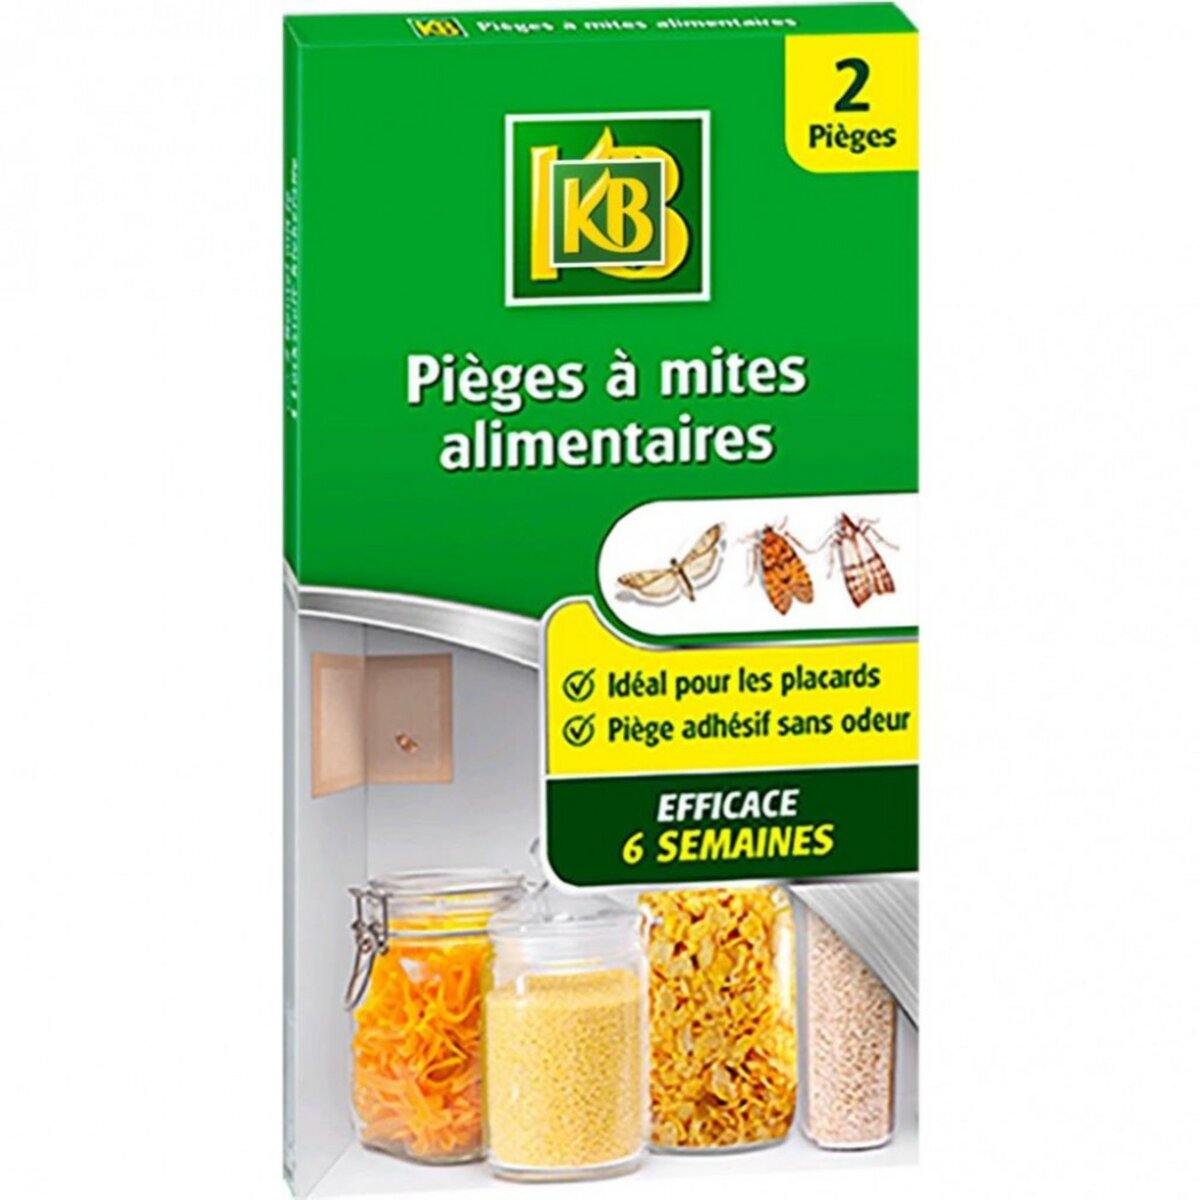 CENTRALE BRICO Lot de 2 Pièges anti-mites alimentaire, KB